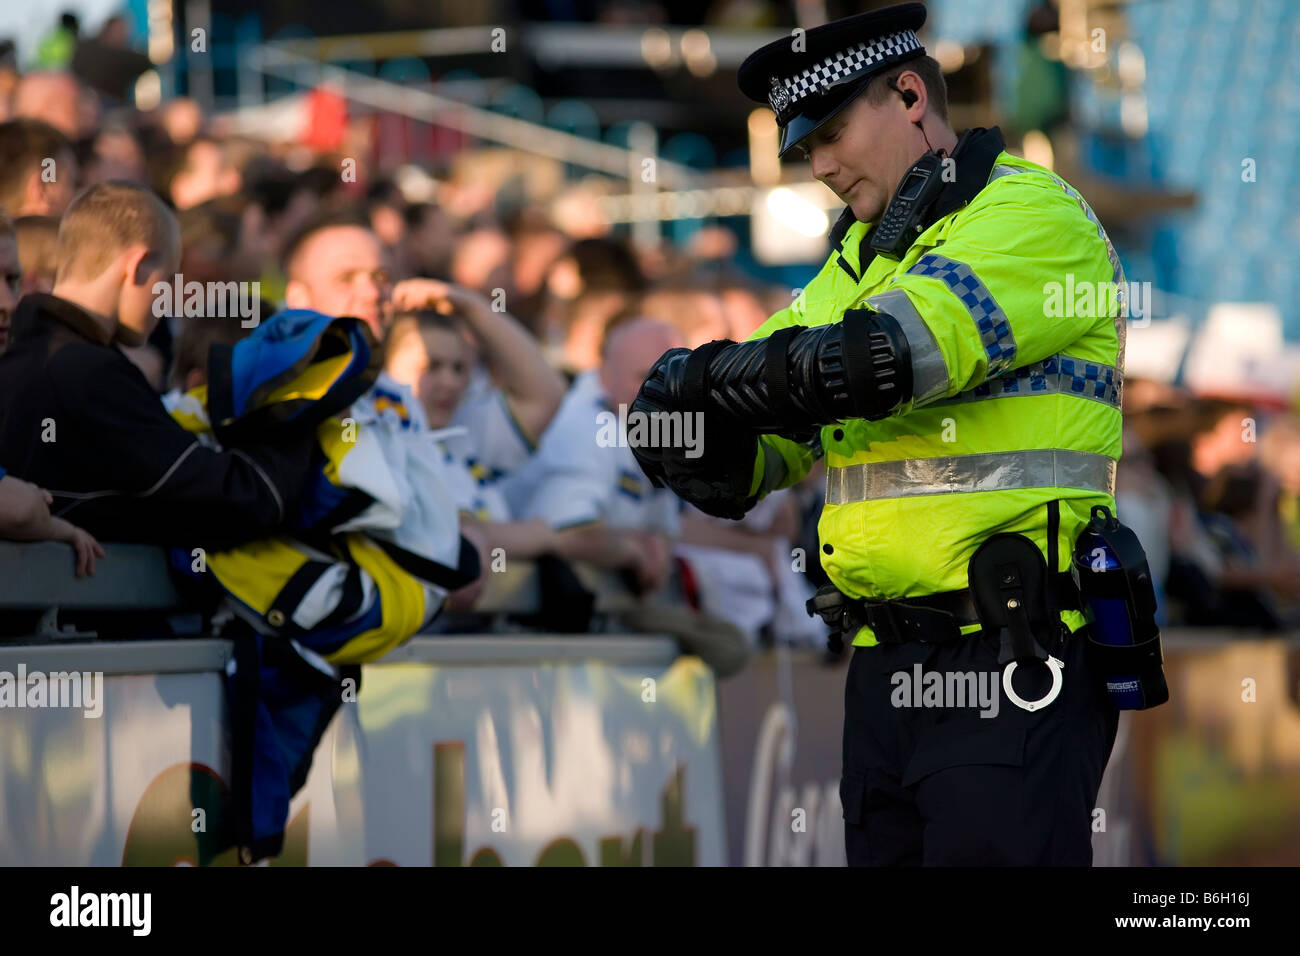 La policía inglés hombre de fútbol de la liga inglesa de fútbol Foto de stock